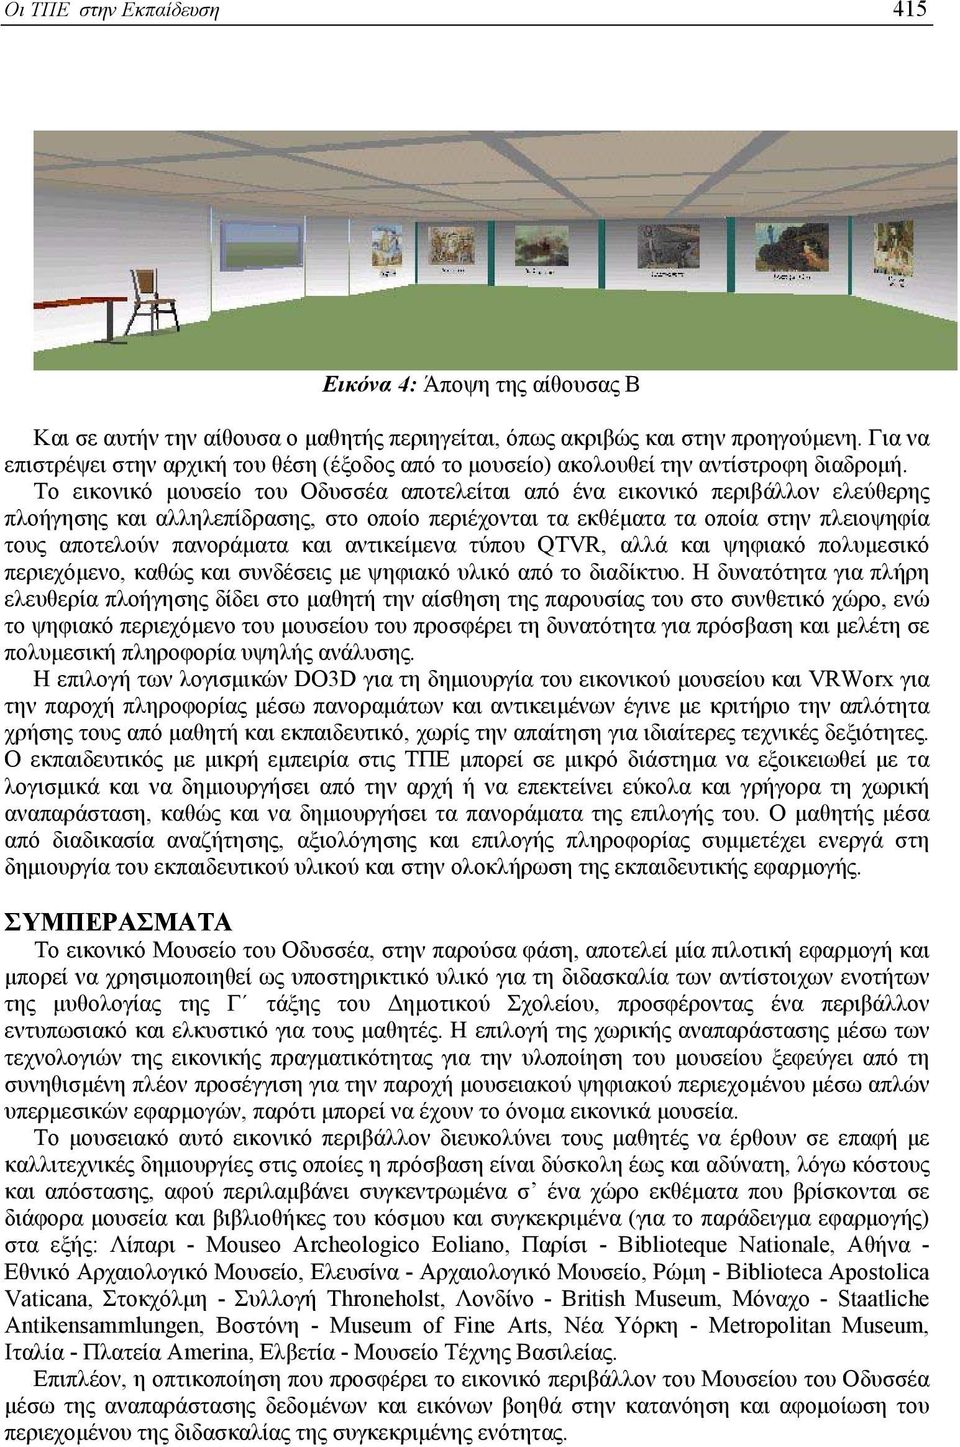 Το εικονικό µουσείο του Οδυσσέα αποτελείται από ένα εικονικό περιβάλλον ελεύθερης πλοήγησης και αλληλεπίδρασης, στο οποίο περιέχονται τα εκθέµατα τα οποία στην πλειοψηφία τους αποτελούν πανοράµατα